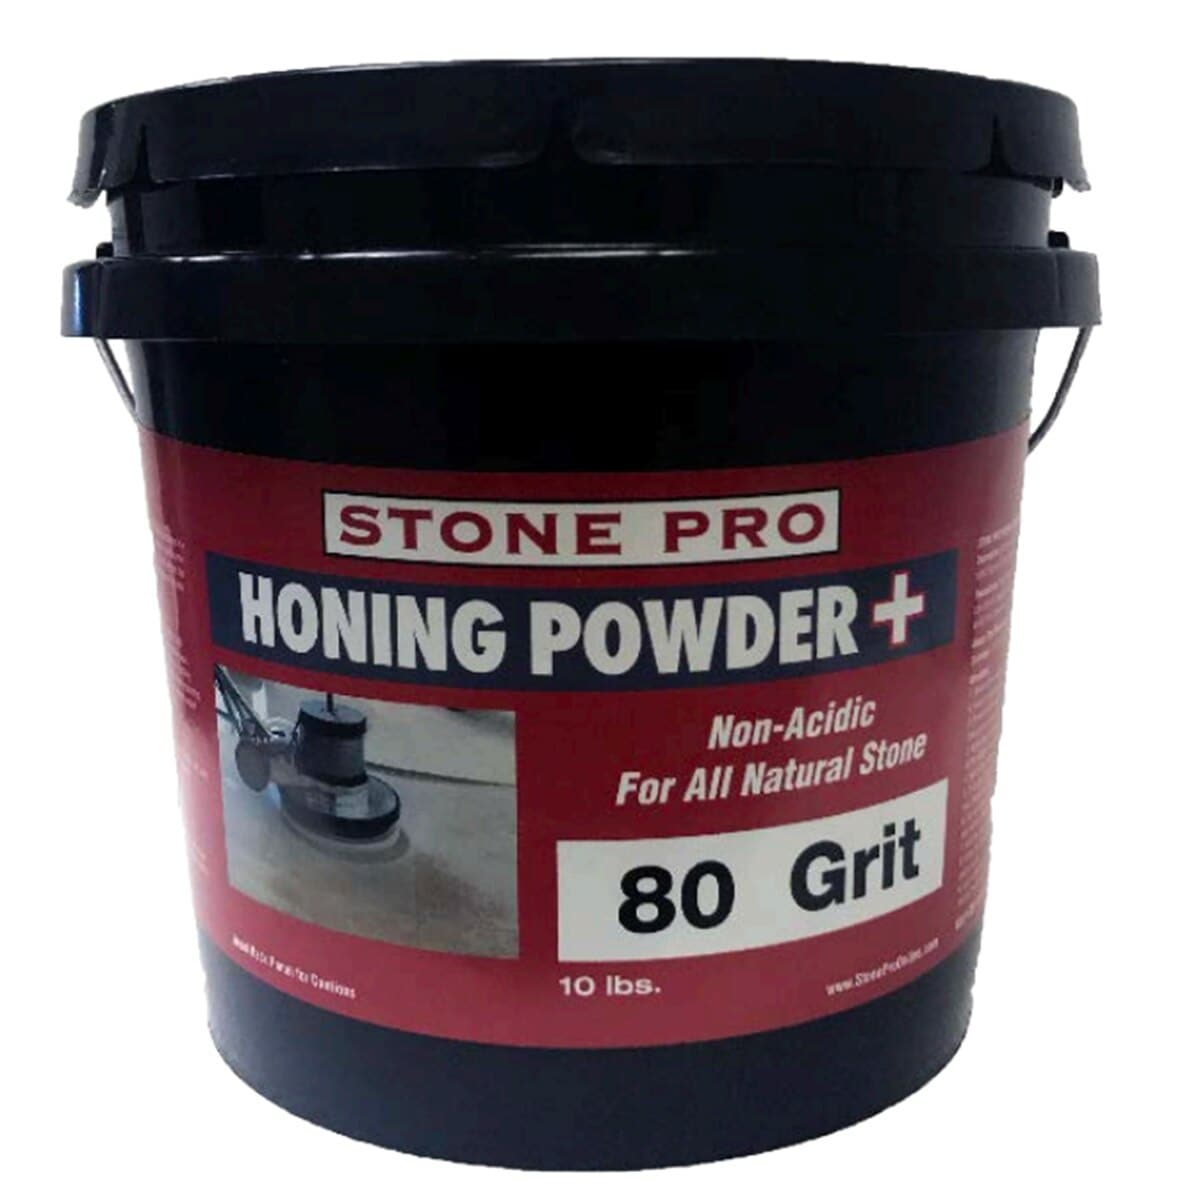 Stone Pro Honing Powder Plus - Stone Pro